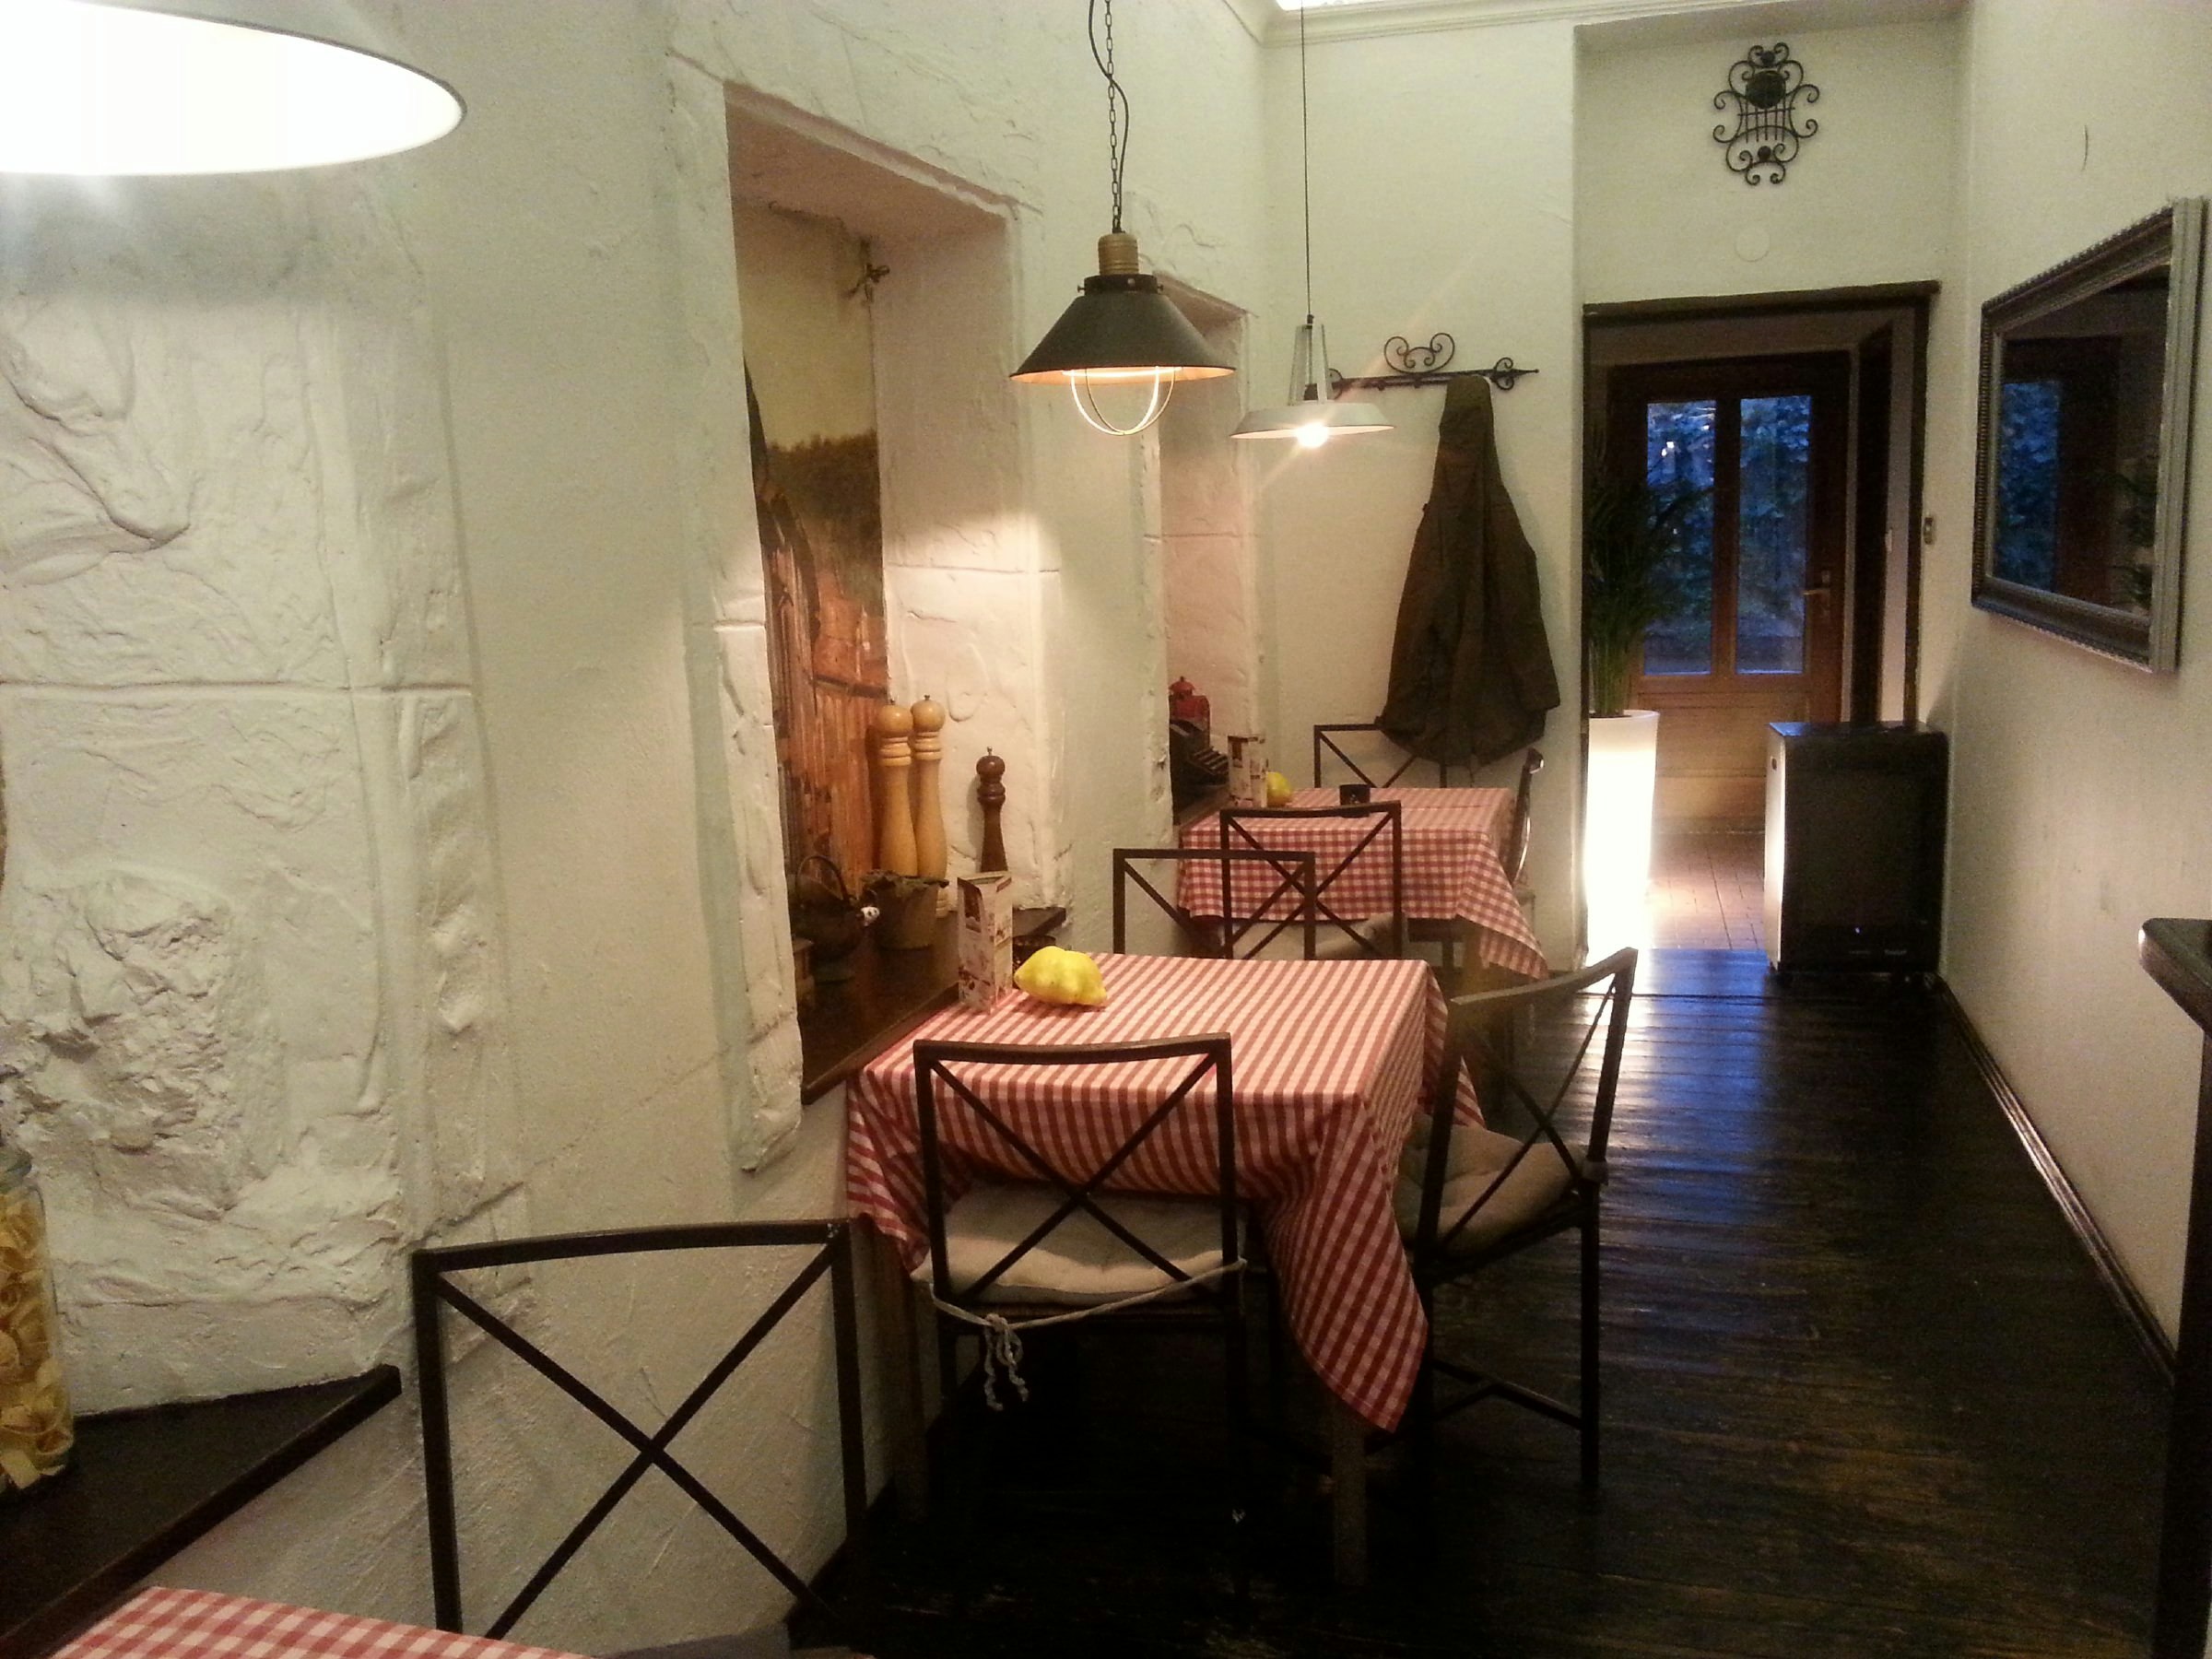 Kuchnia i Wino, side dining area.